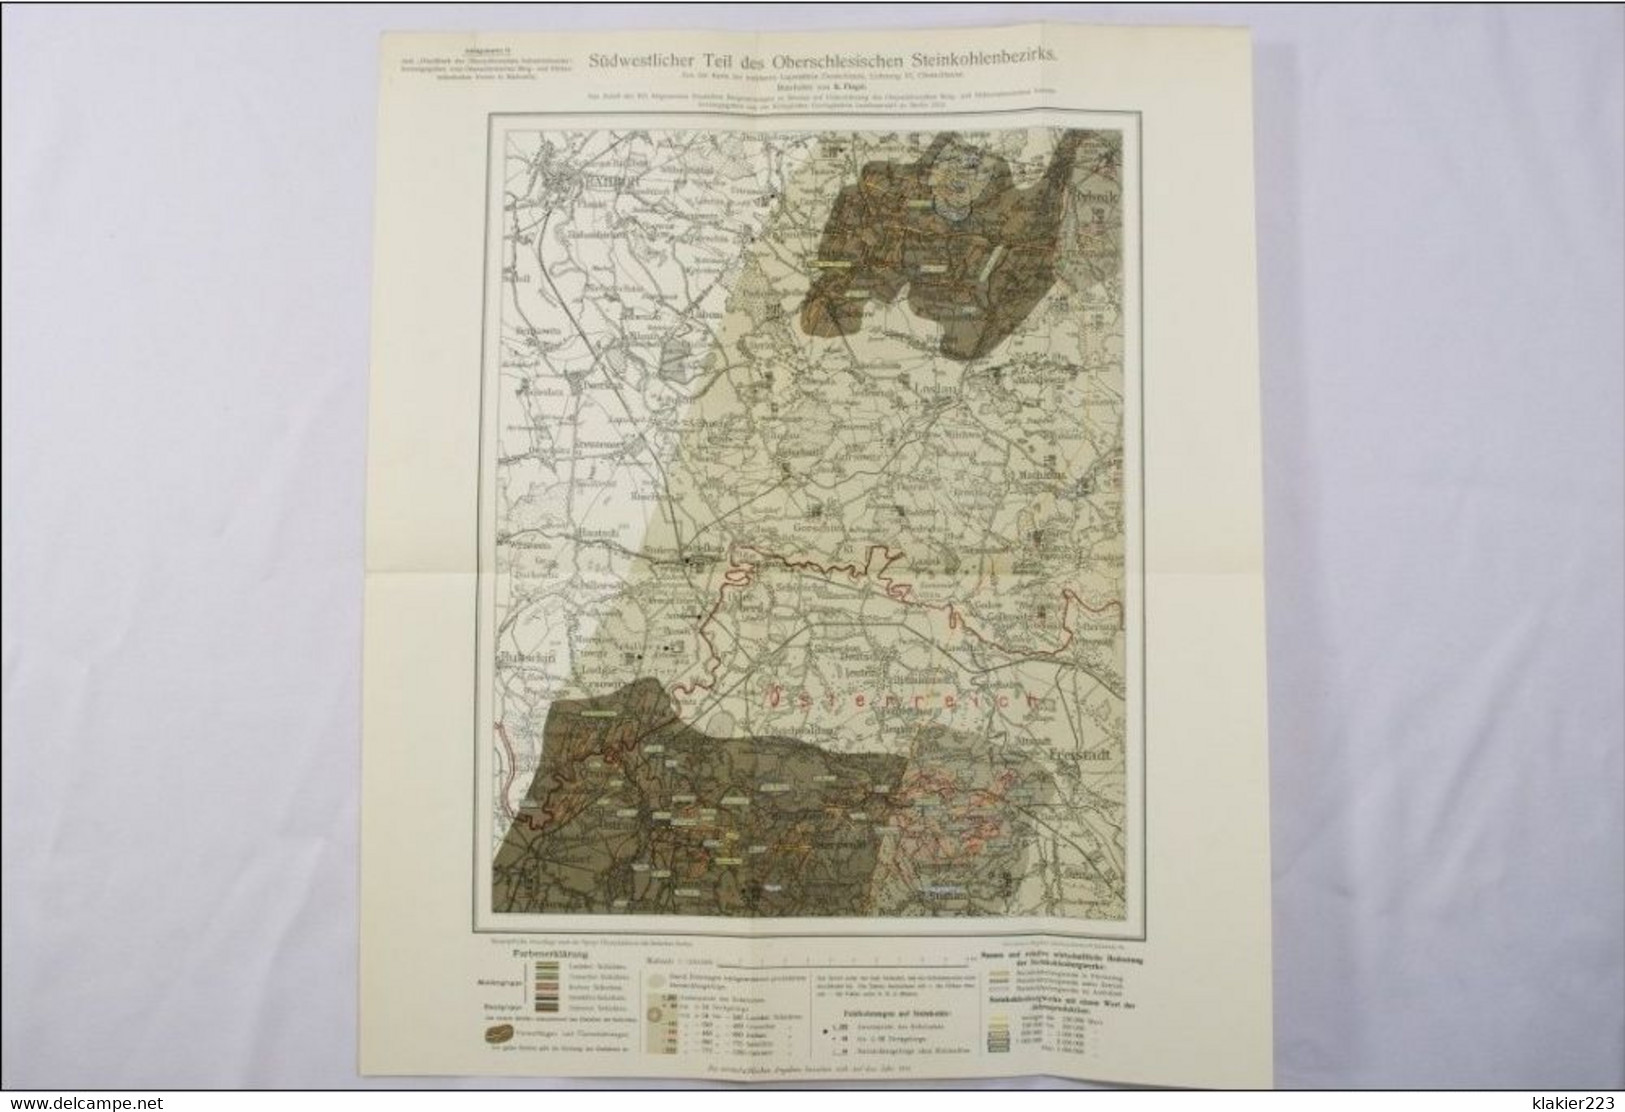 Karten-Anlagen zum Handbuch der Oberschlesischen Industriebezirks / Breslau 1913